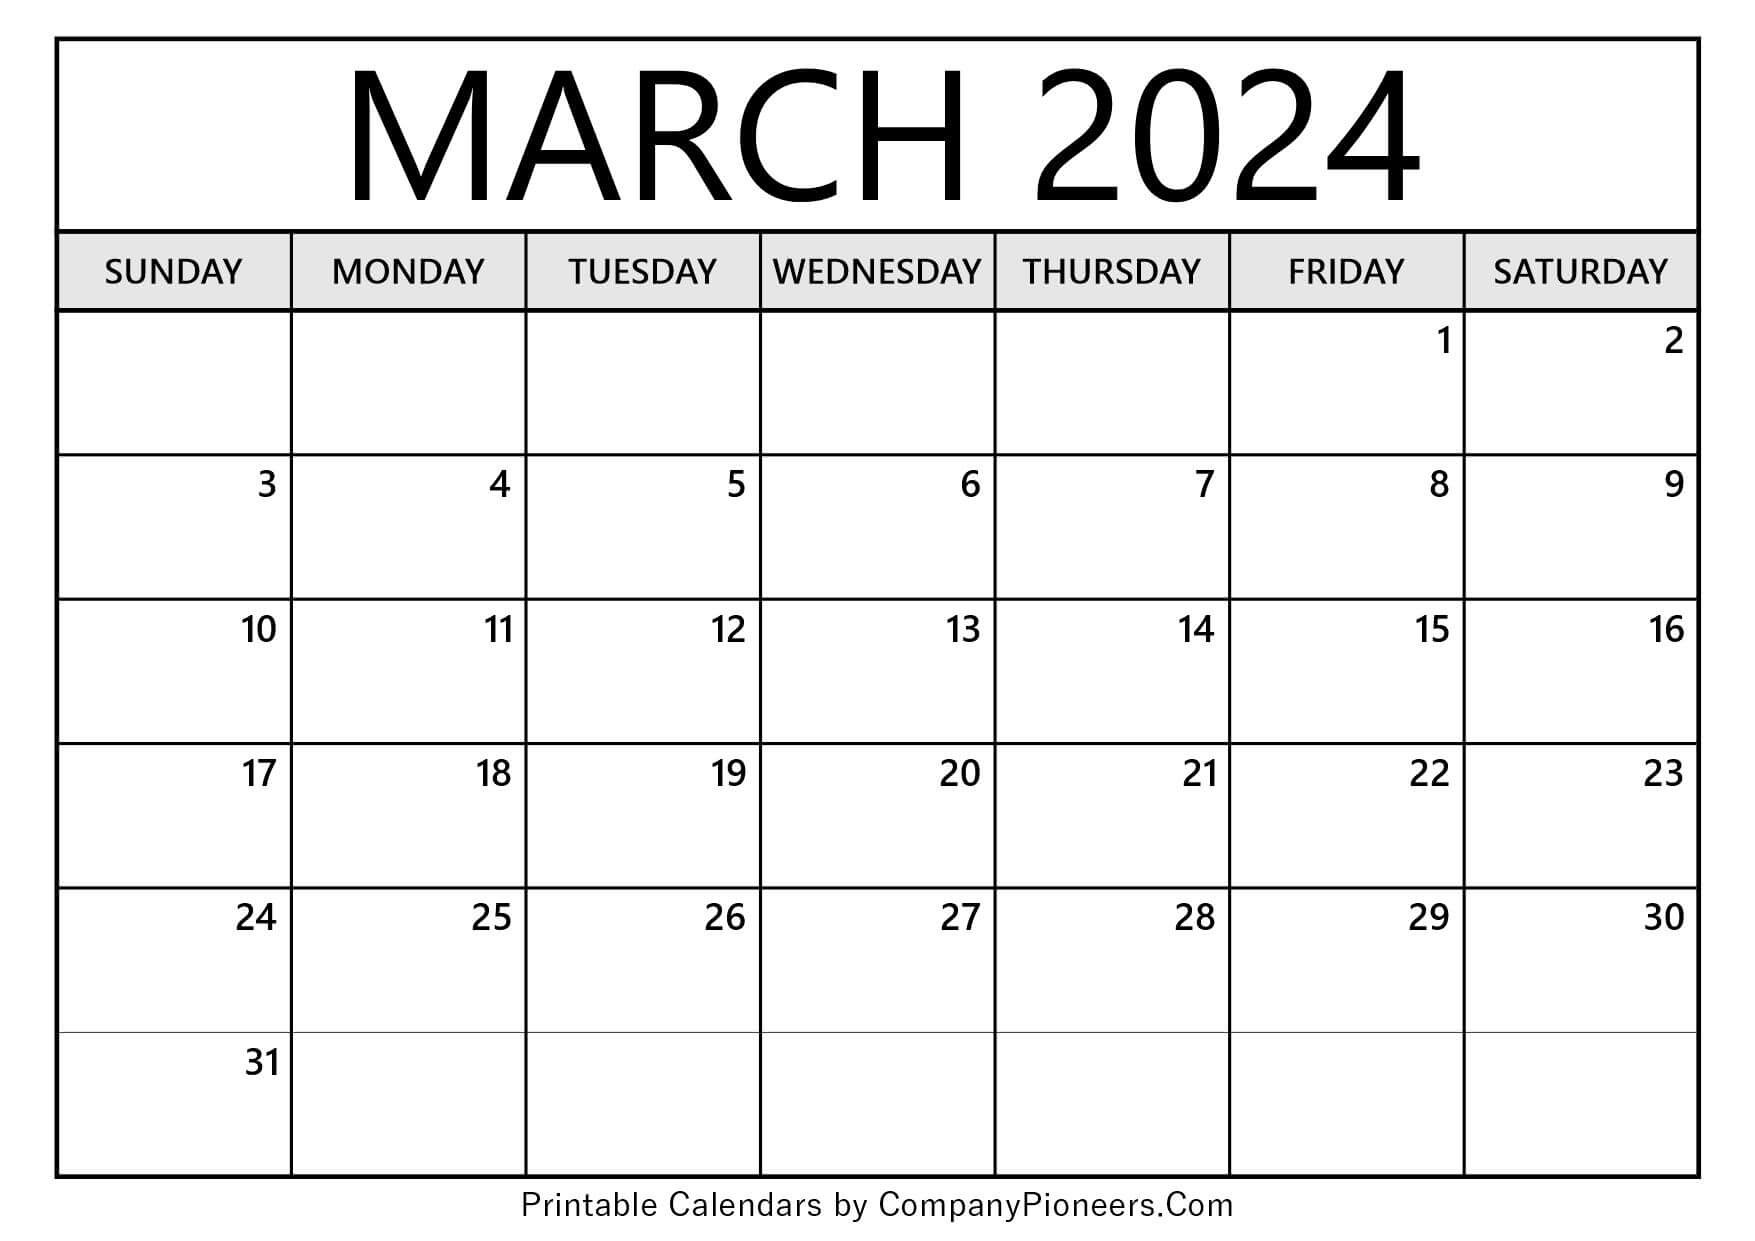 March 2024 Calendar Template